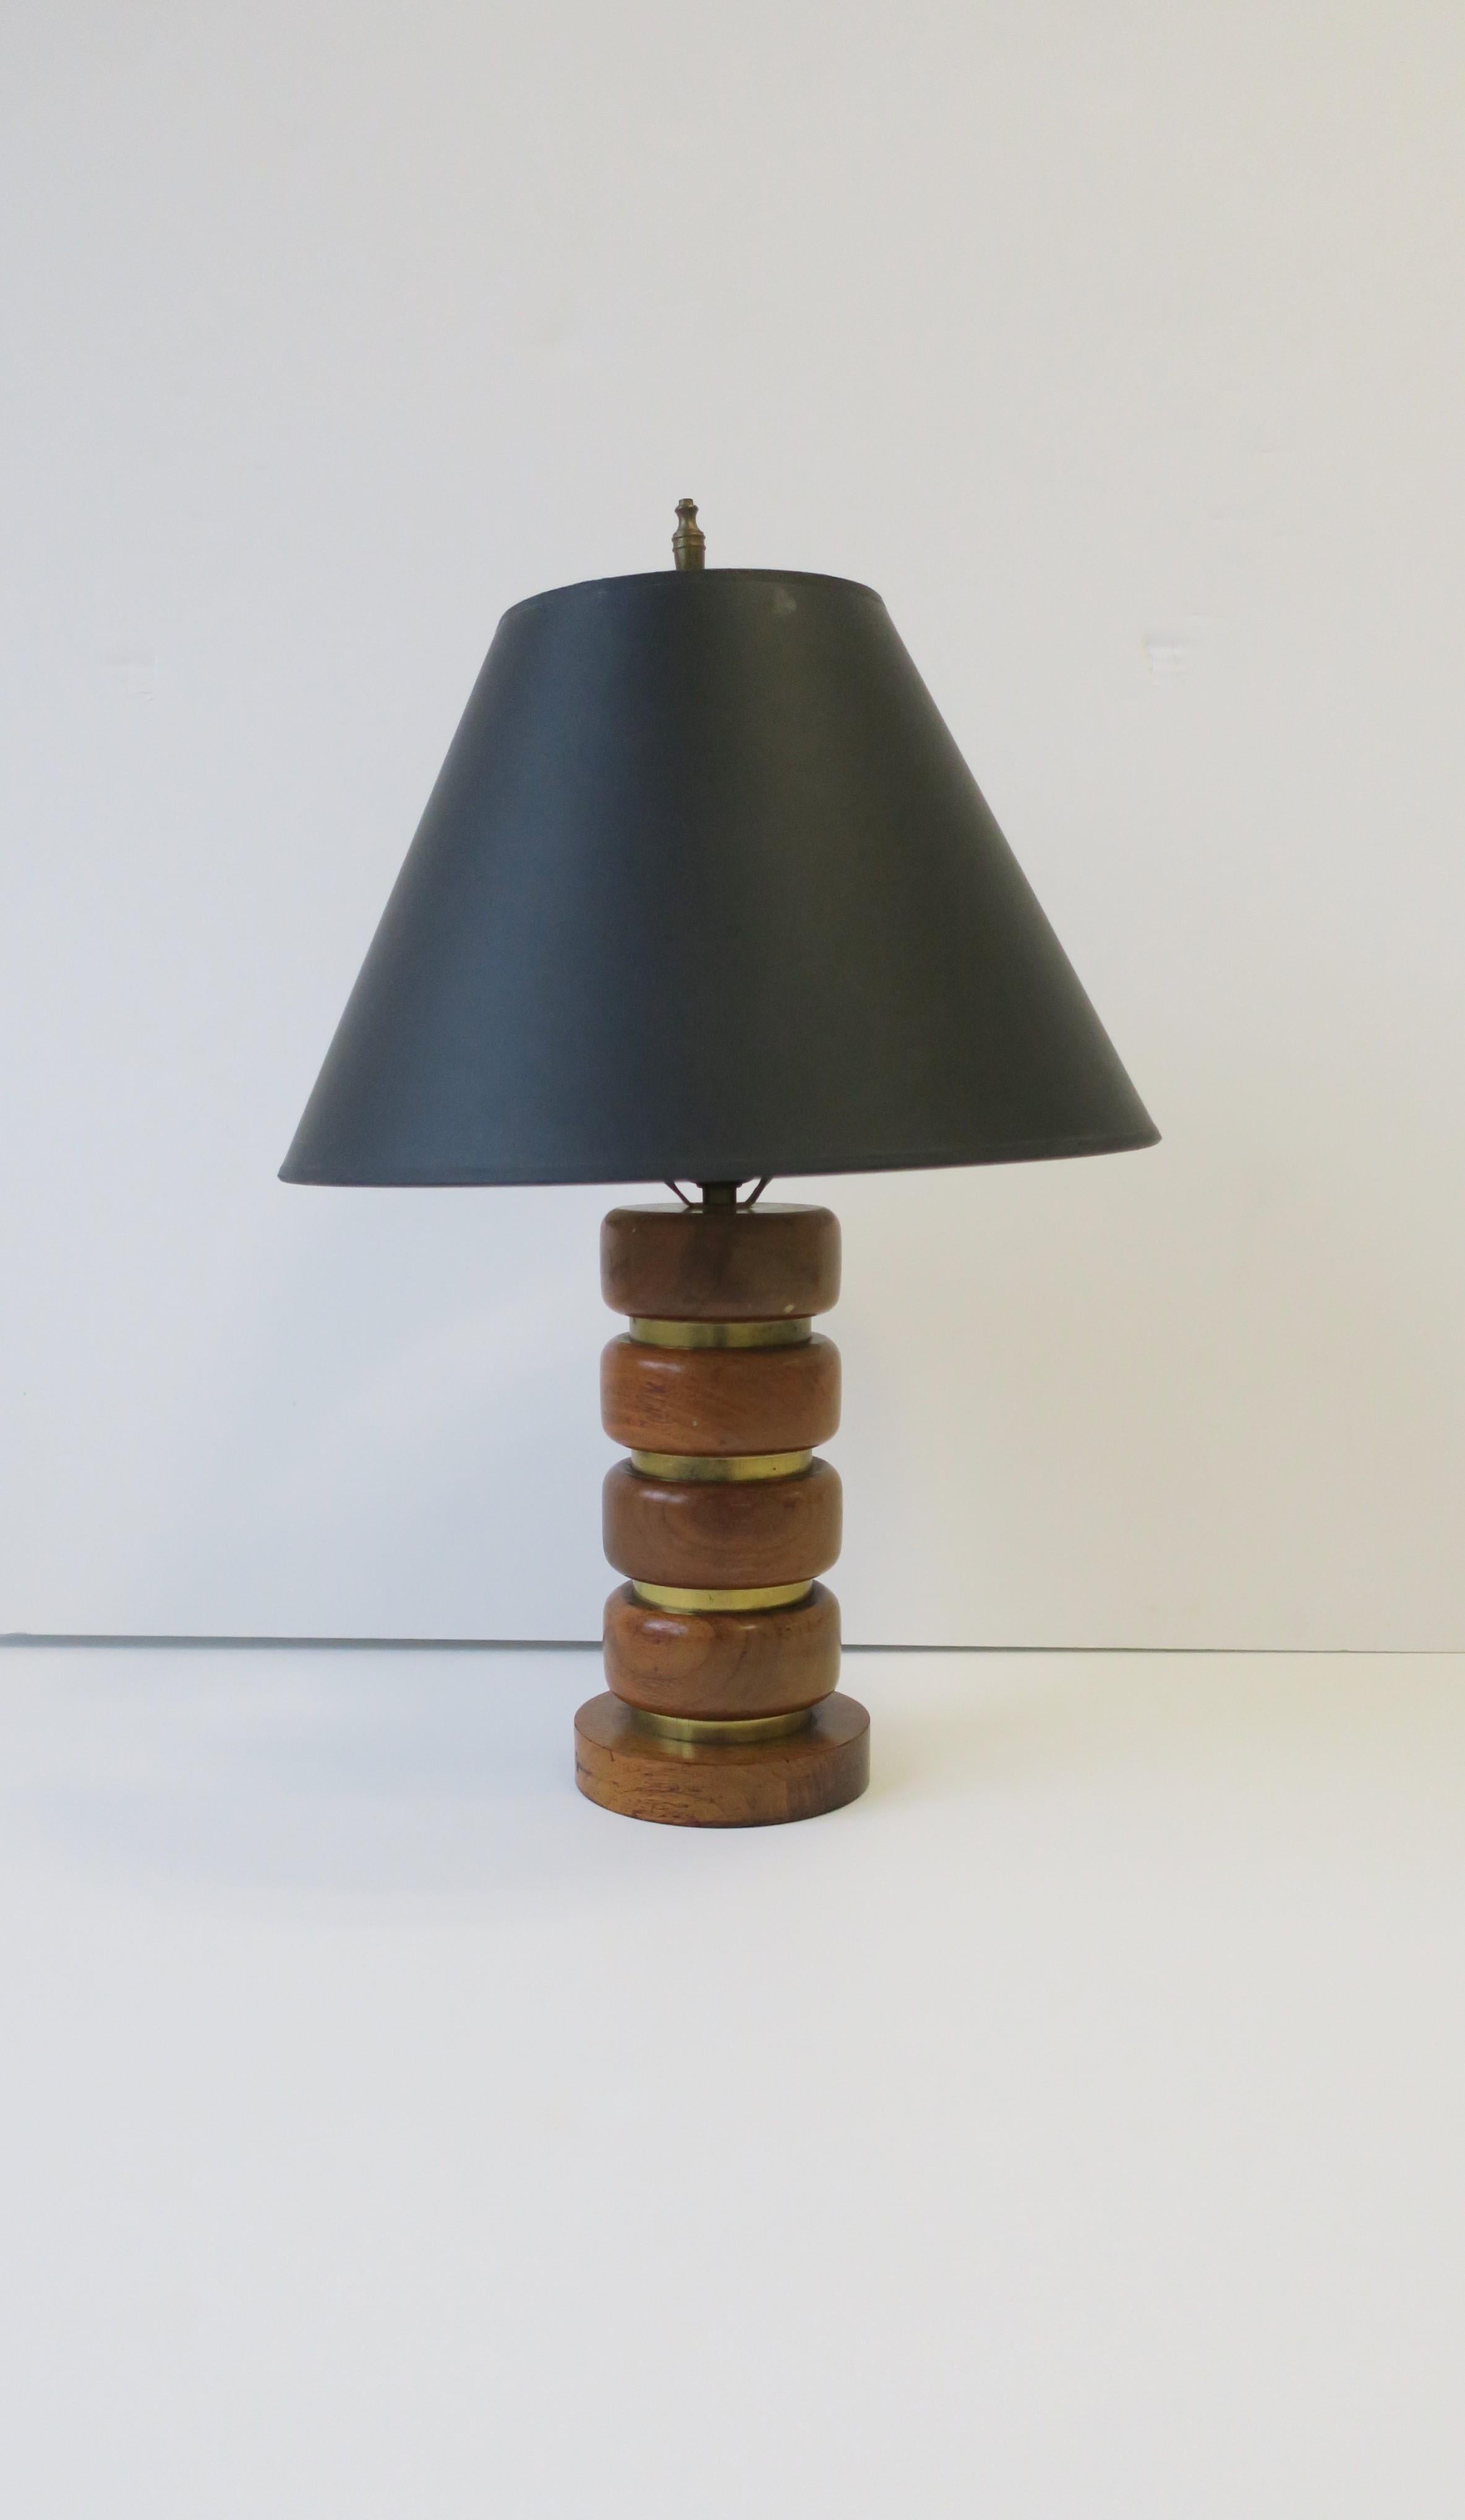 Lampe de bureau ou de table en bois de noyer et laiton, vers le milieu du 20e siècle. La lampe est en bois tourné avec des arêtes douces et des creux de bandes horizontales en laiton. Cette lampe ferait une excellente lampe de bureau ou de table,